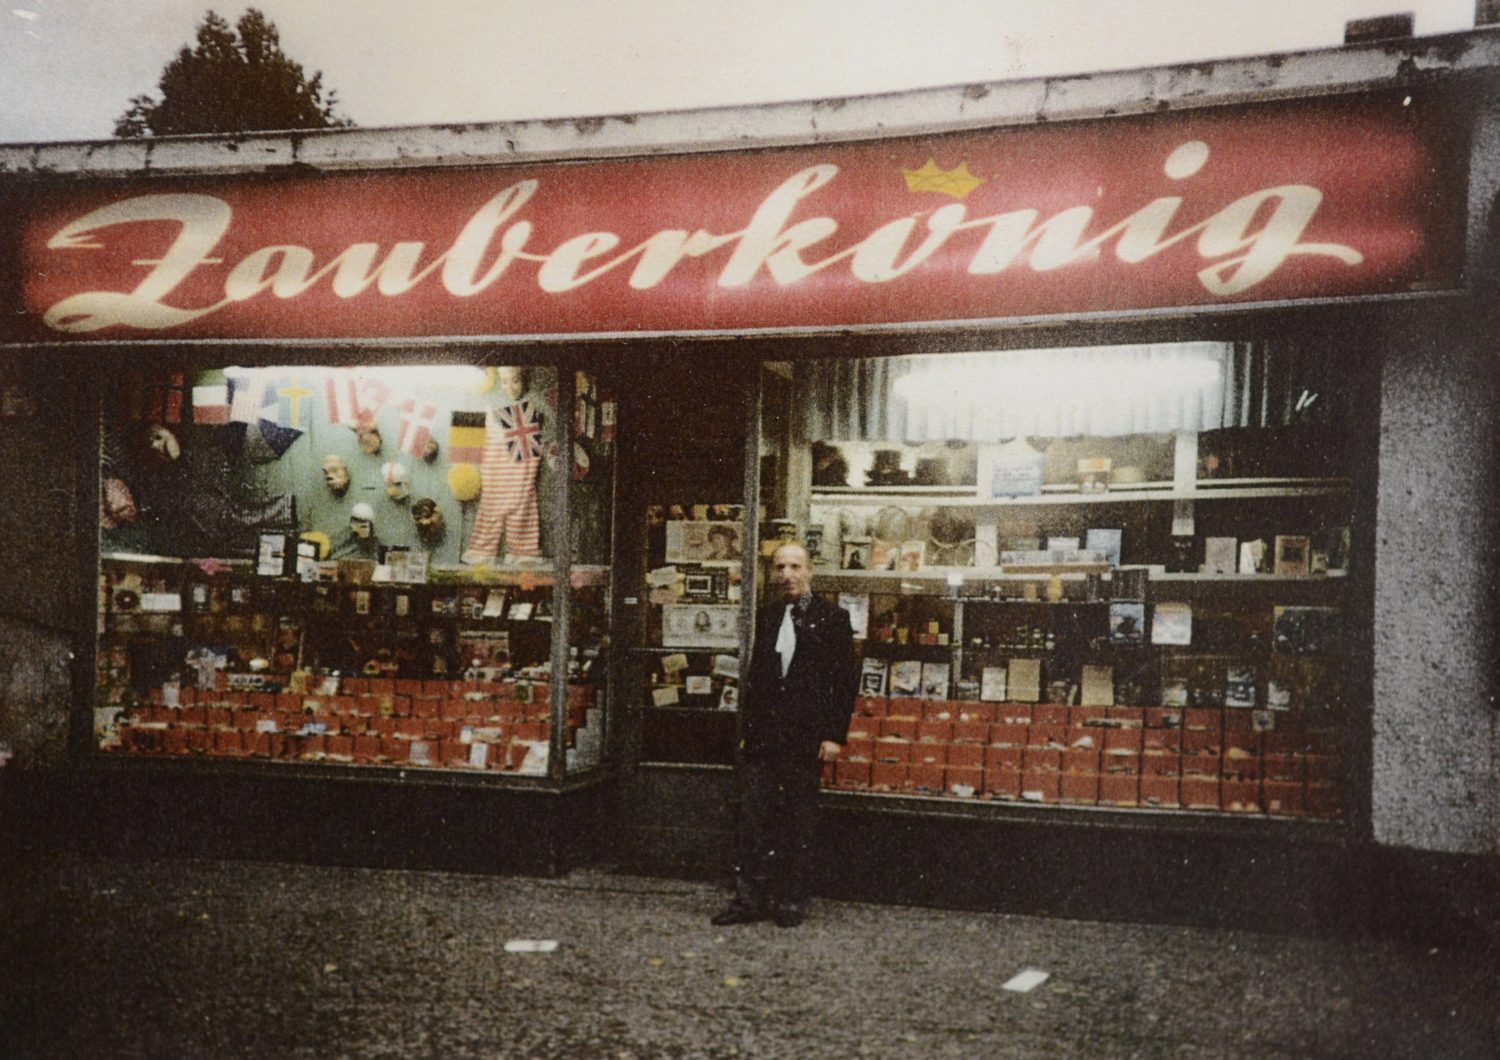 Der Laden Zauberkönig in Neukölln existiert seit 1884. Foto: Imago/Bernd Friedel